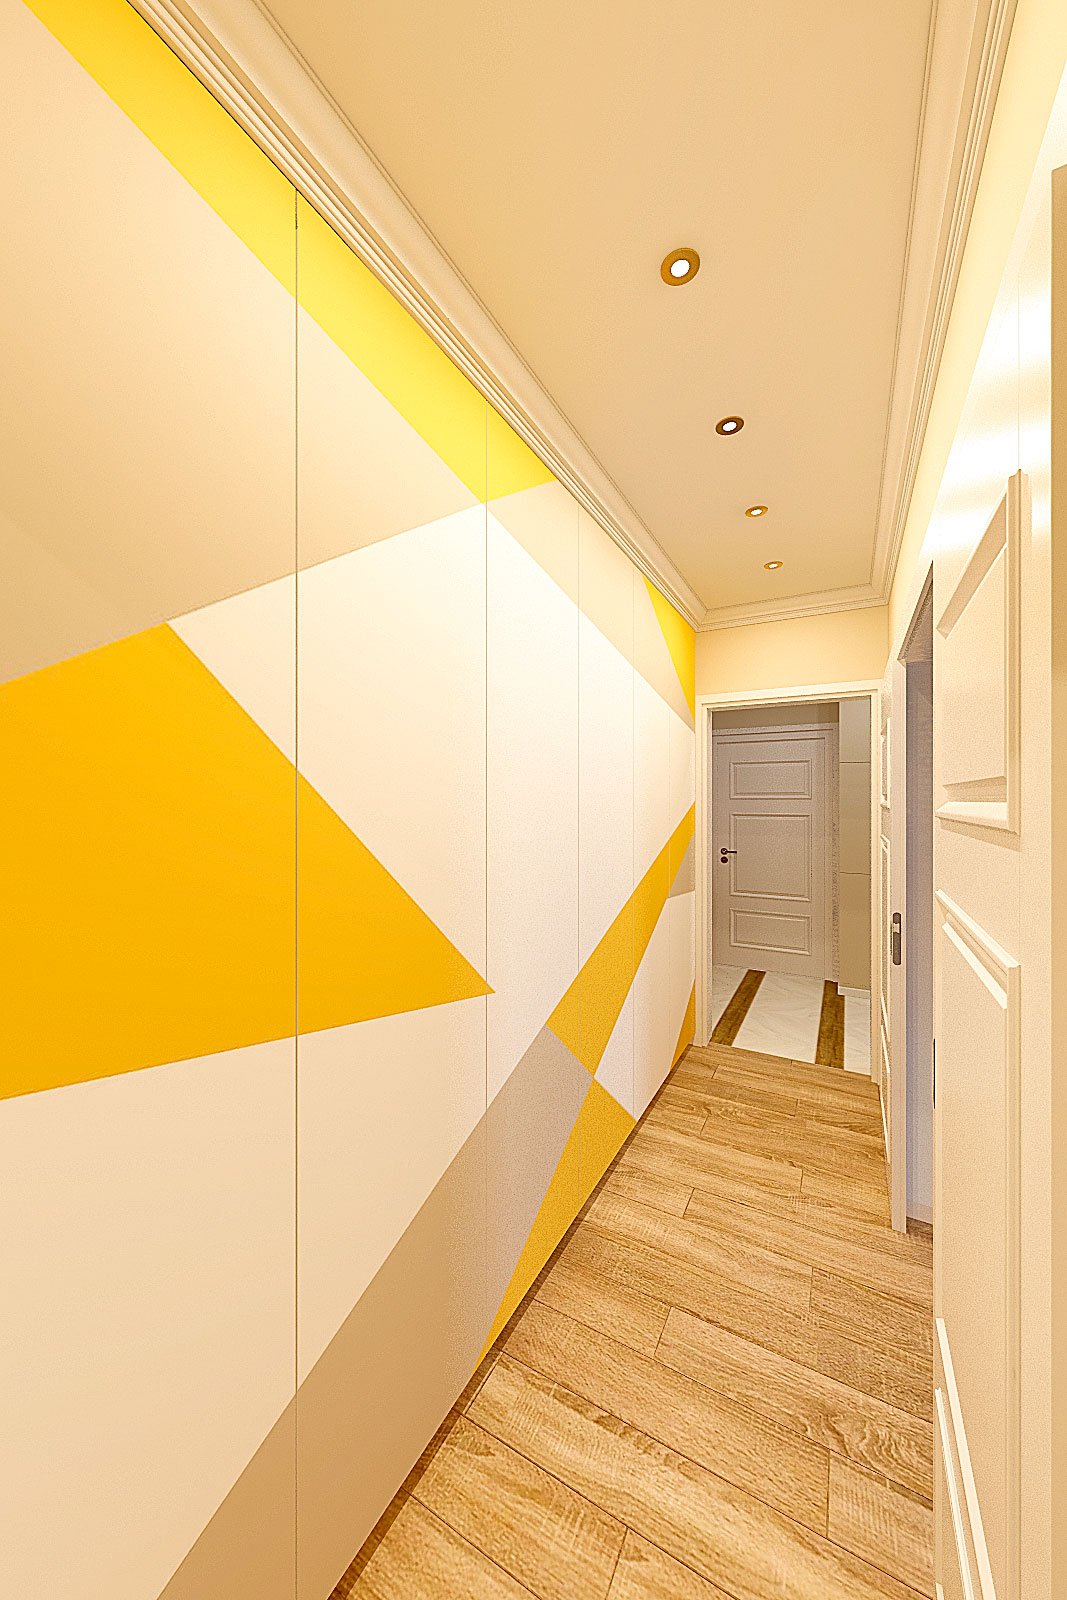 дизайн интерьера коридора в современном стиле, Гомель 2018, фото №1